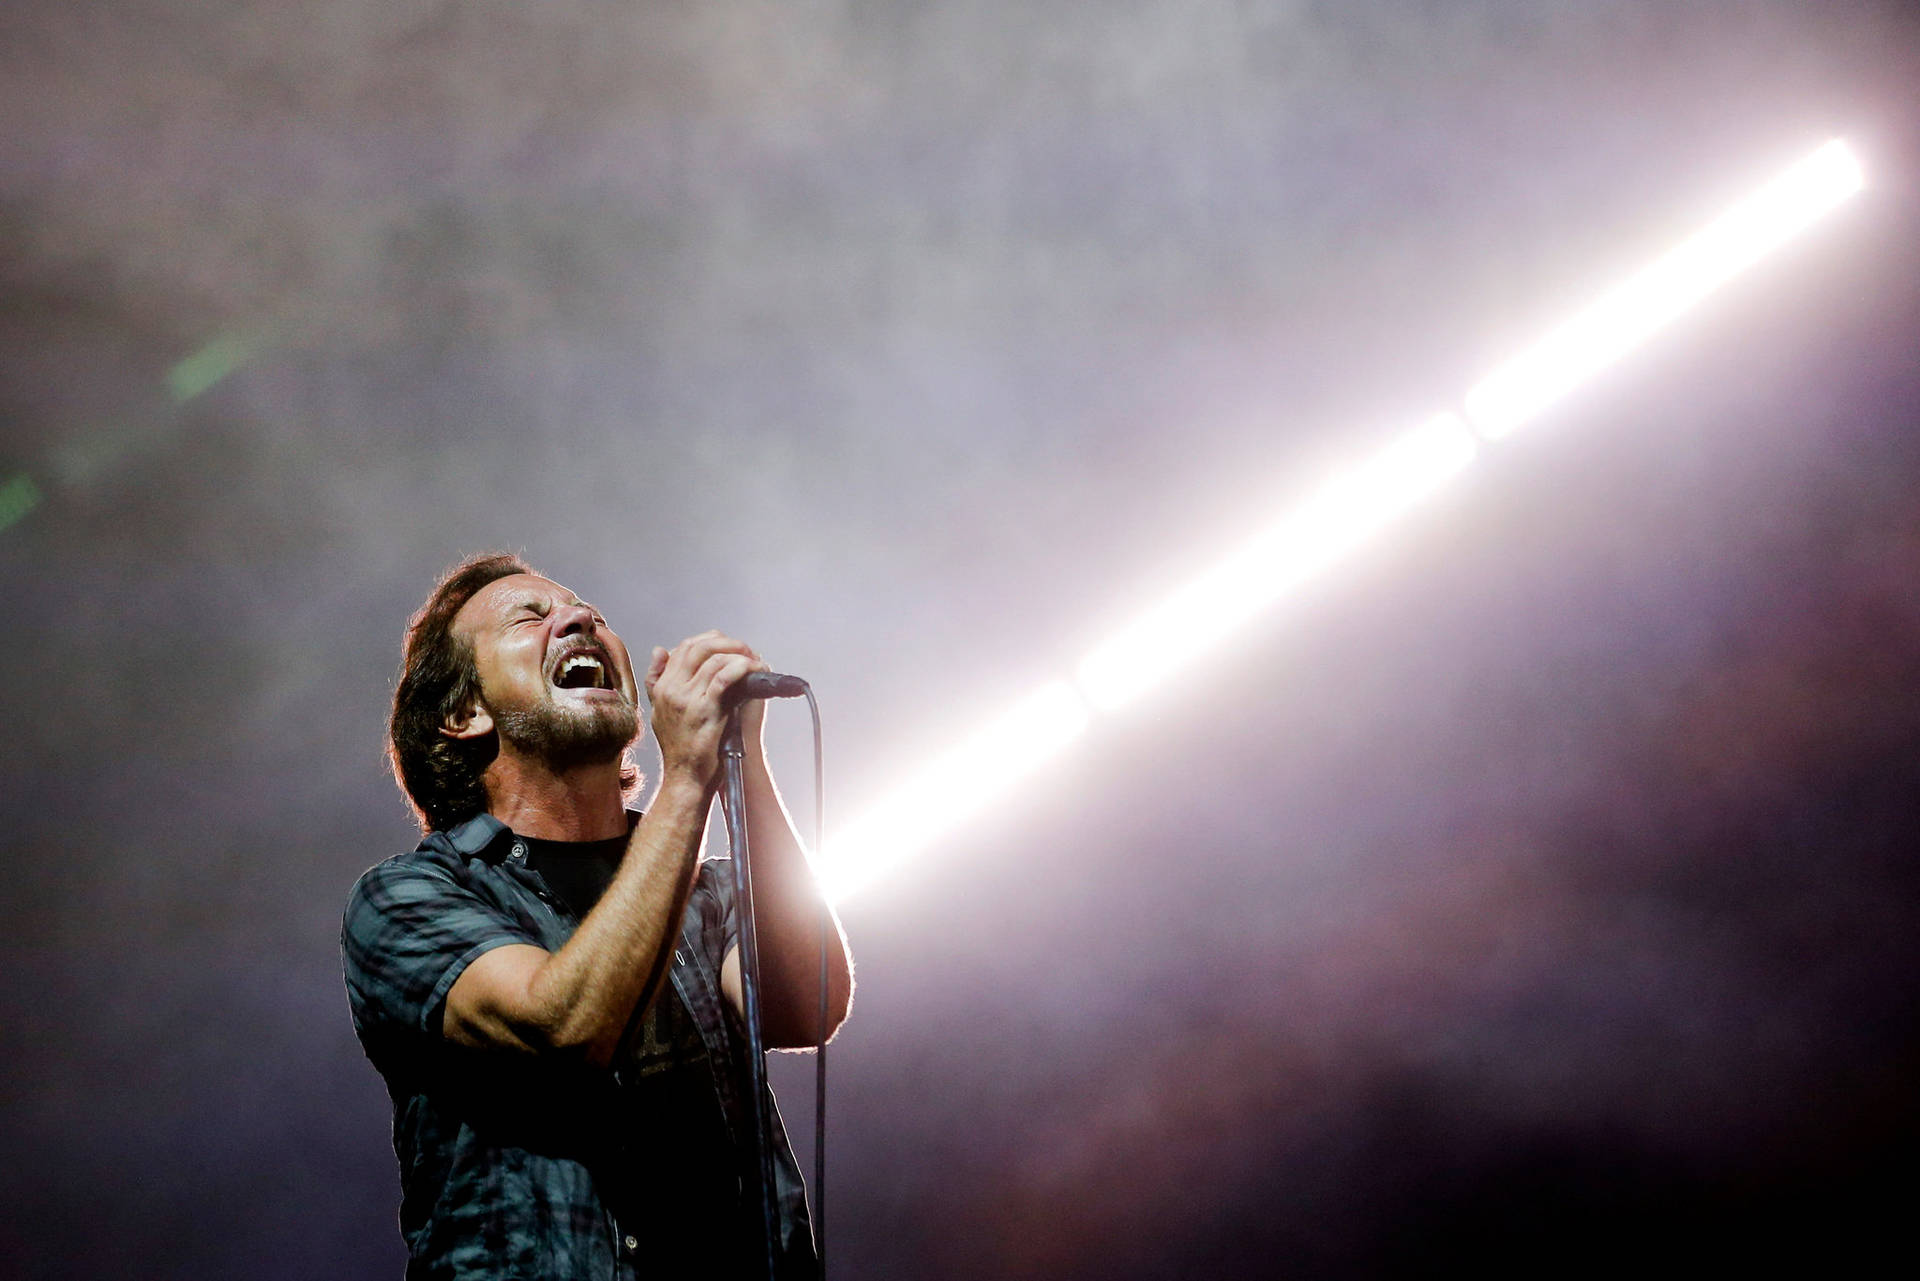 Pearl Jam Rock Band Singer Eddie Vedder